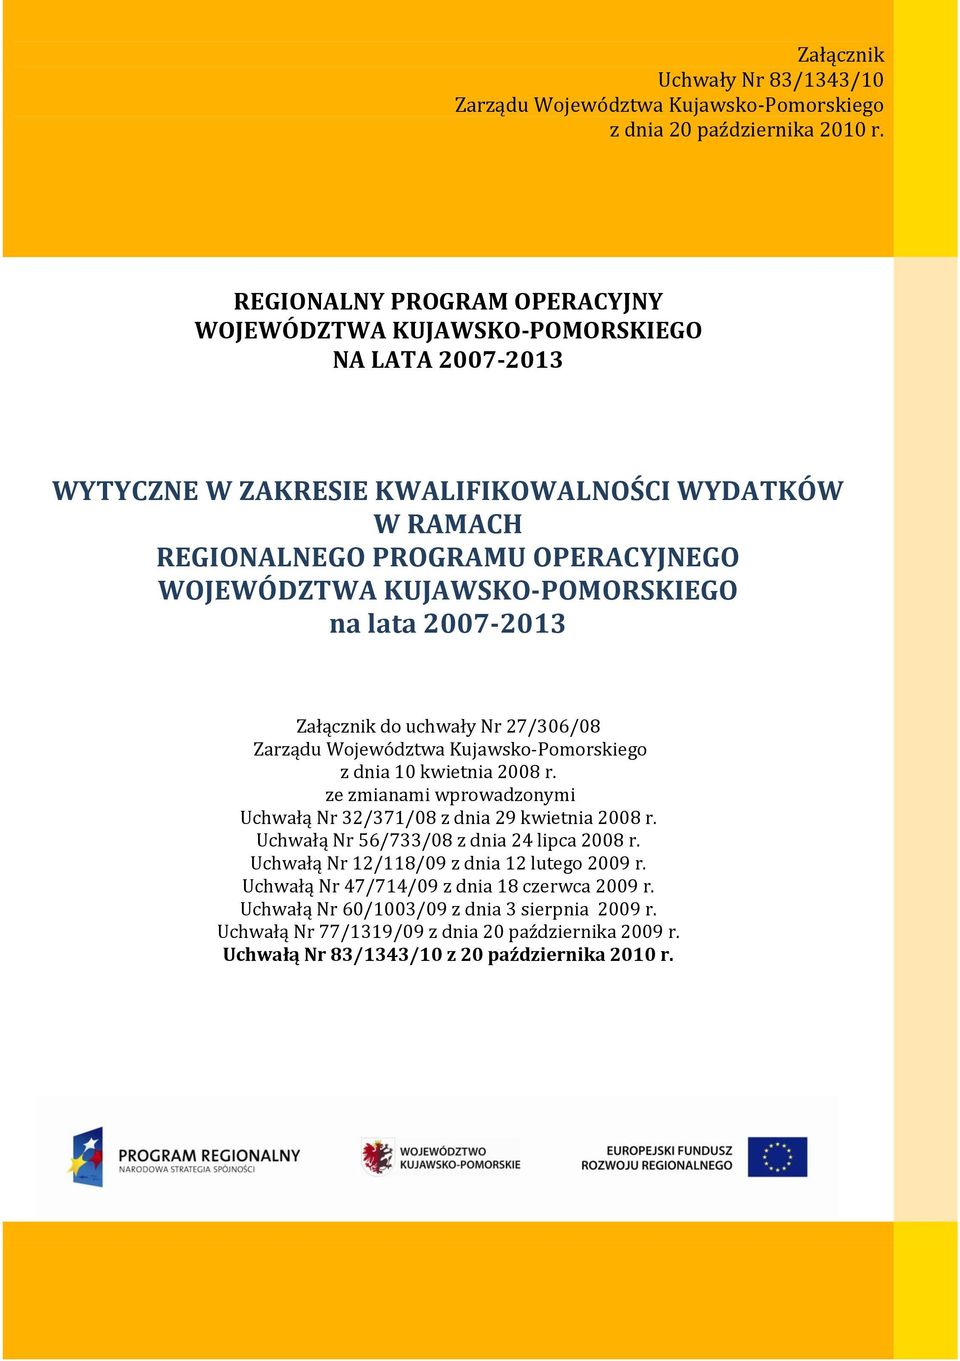 KUJAWSKO-POMORSKIEGO na lata 2007-2013 Załącznik do uchwały Nr 27/306/08 Zarządu Województwa Kujawsko-Pomorskiego z dnia 10 kwietnia 2008 r.